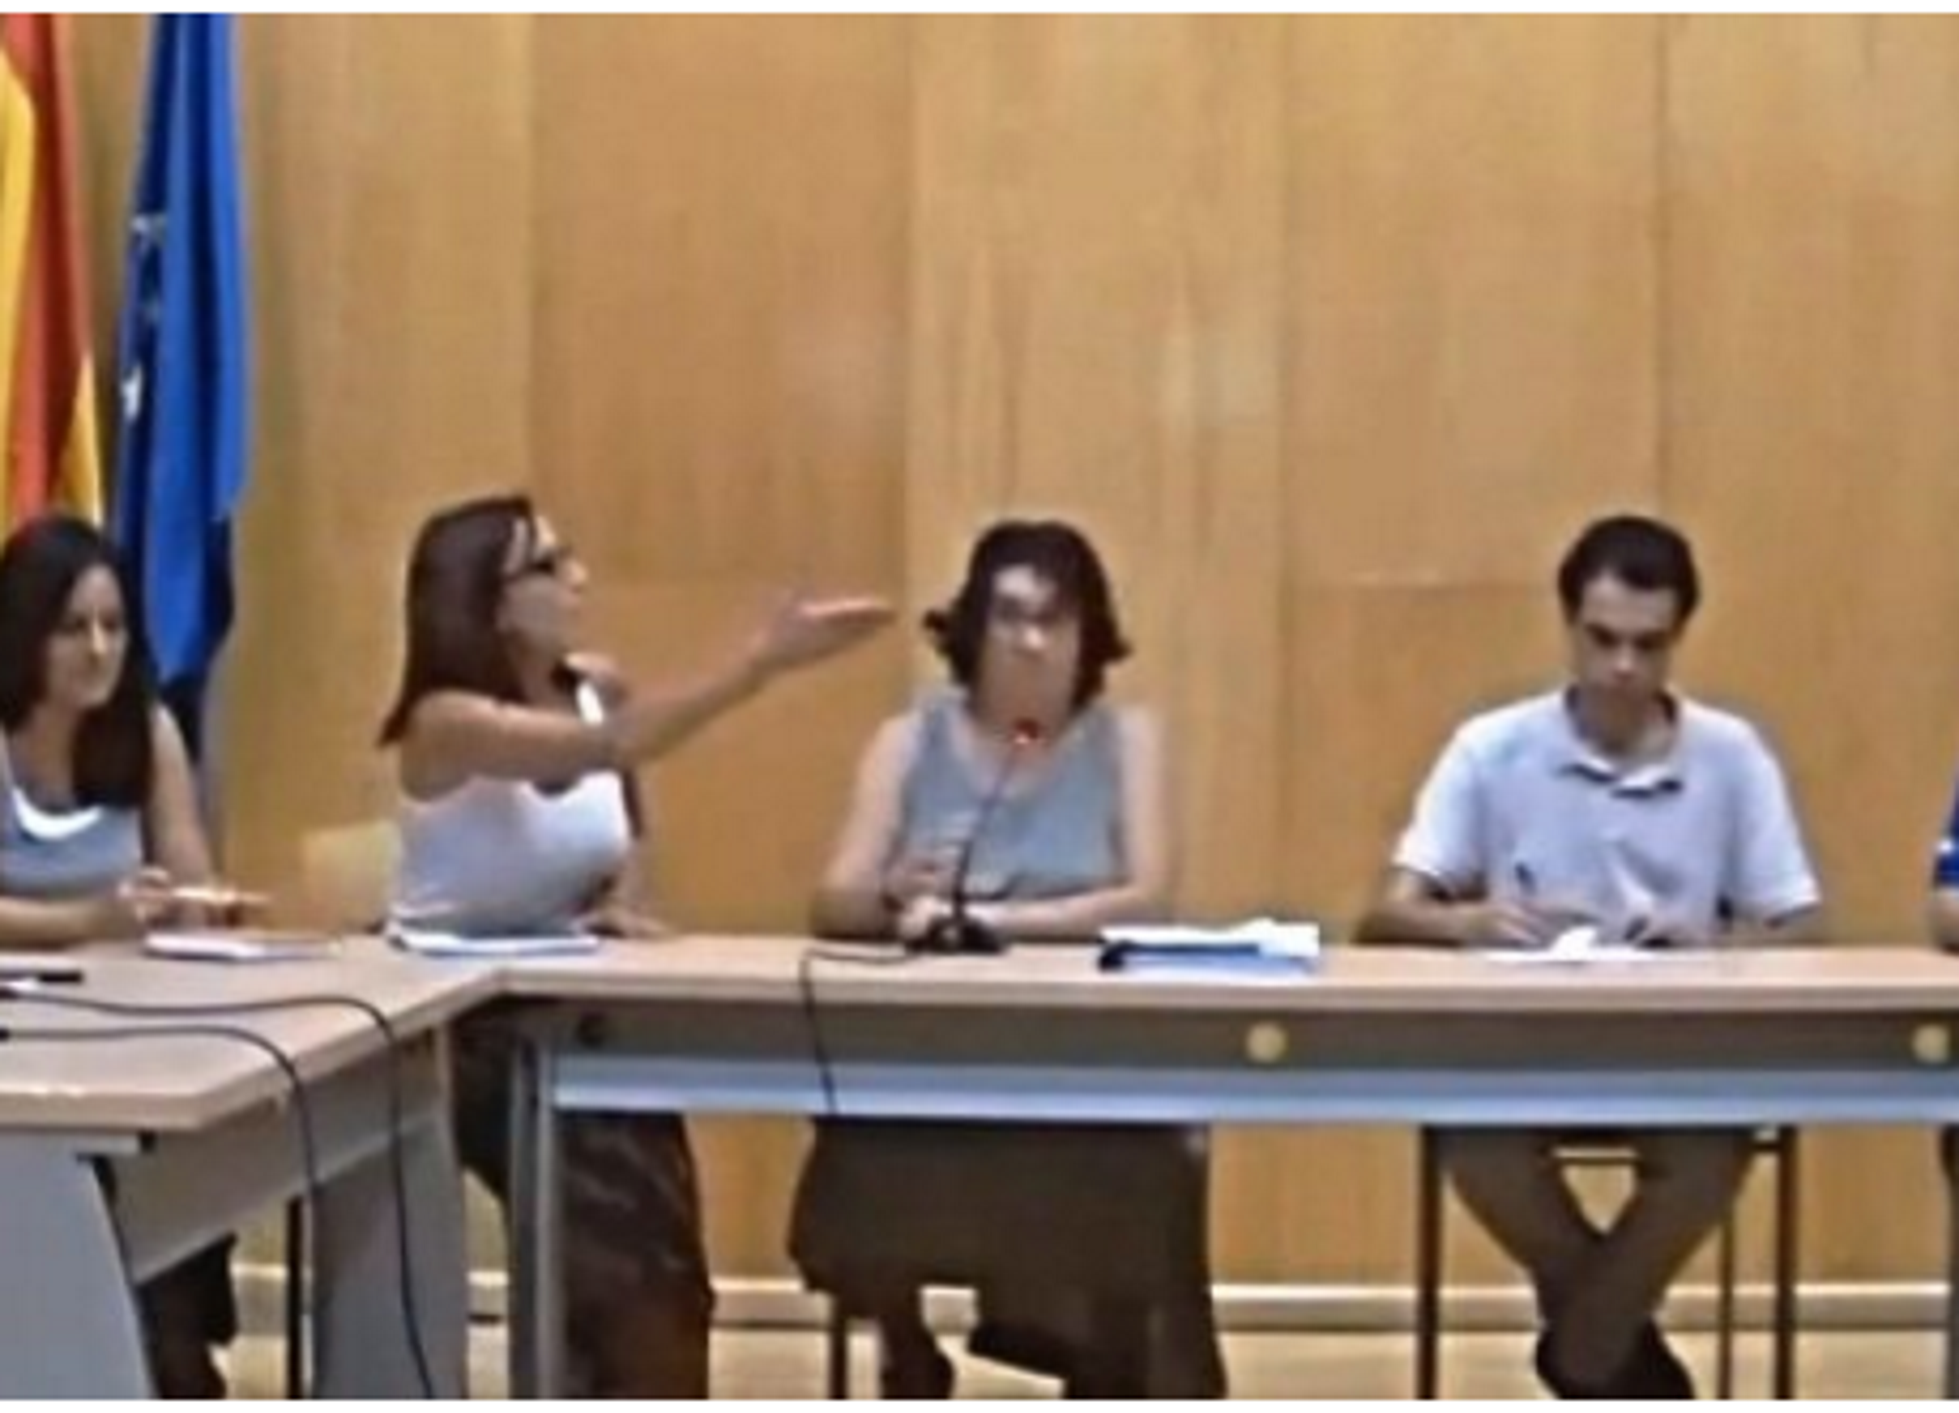 Una regidora del PP obliga a parlar castellà: "Ho diu la Constitució"